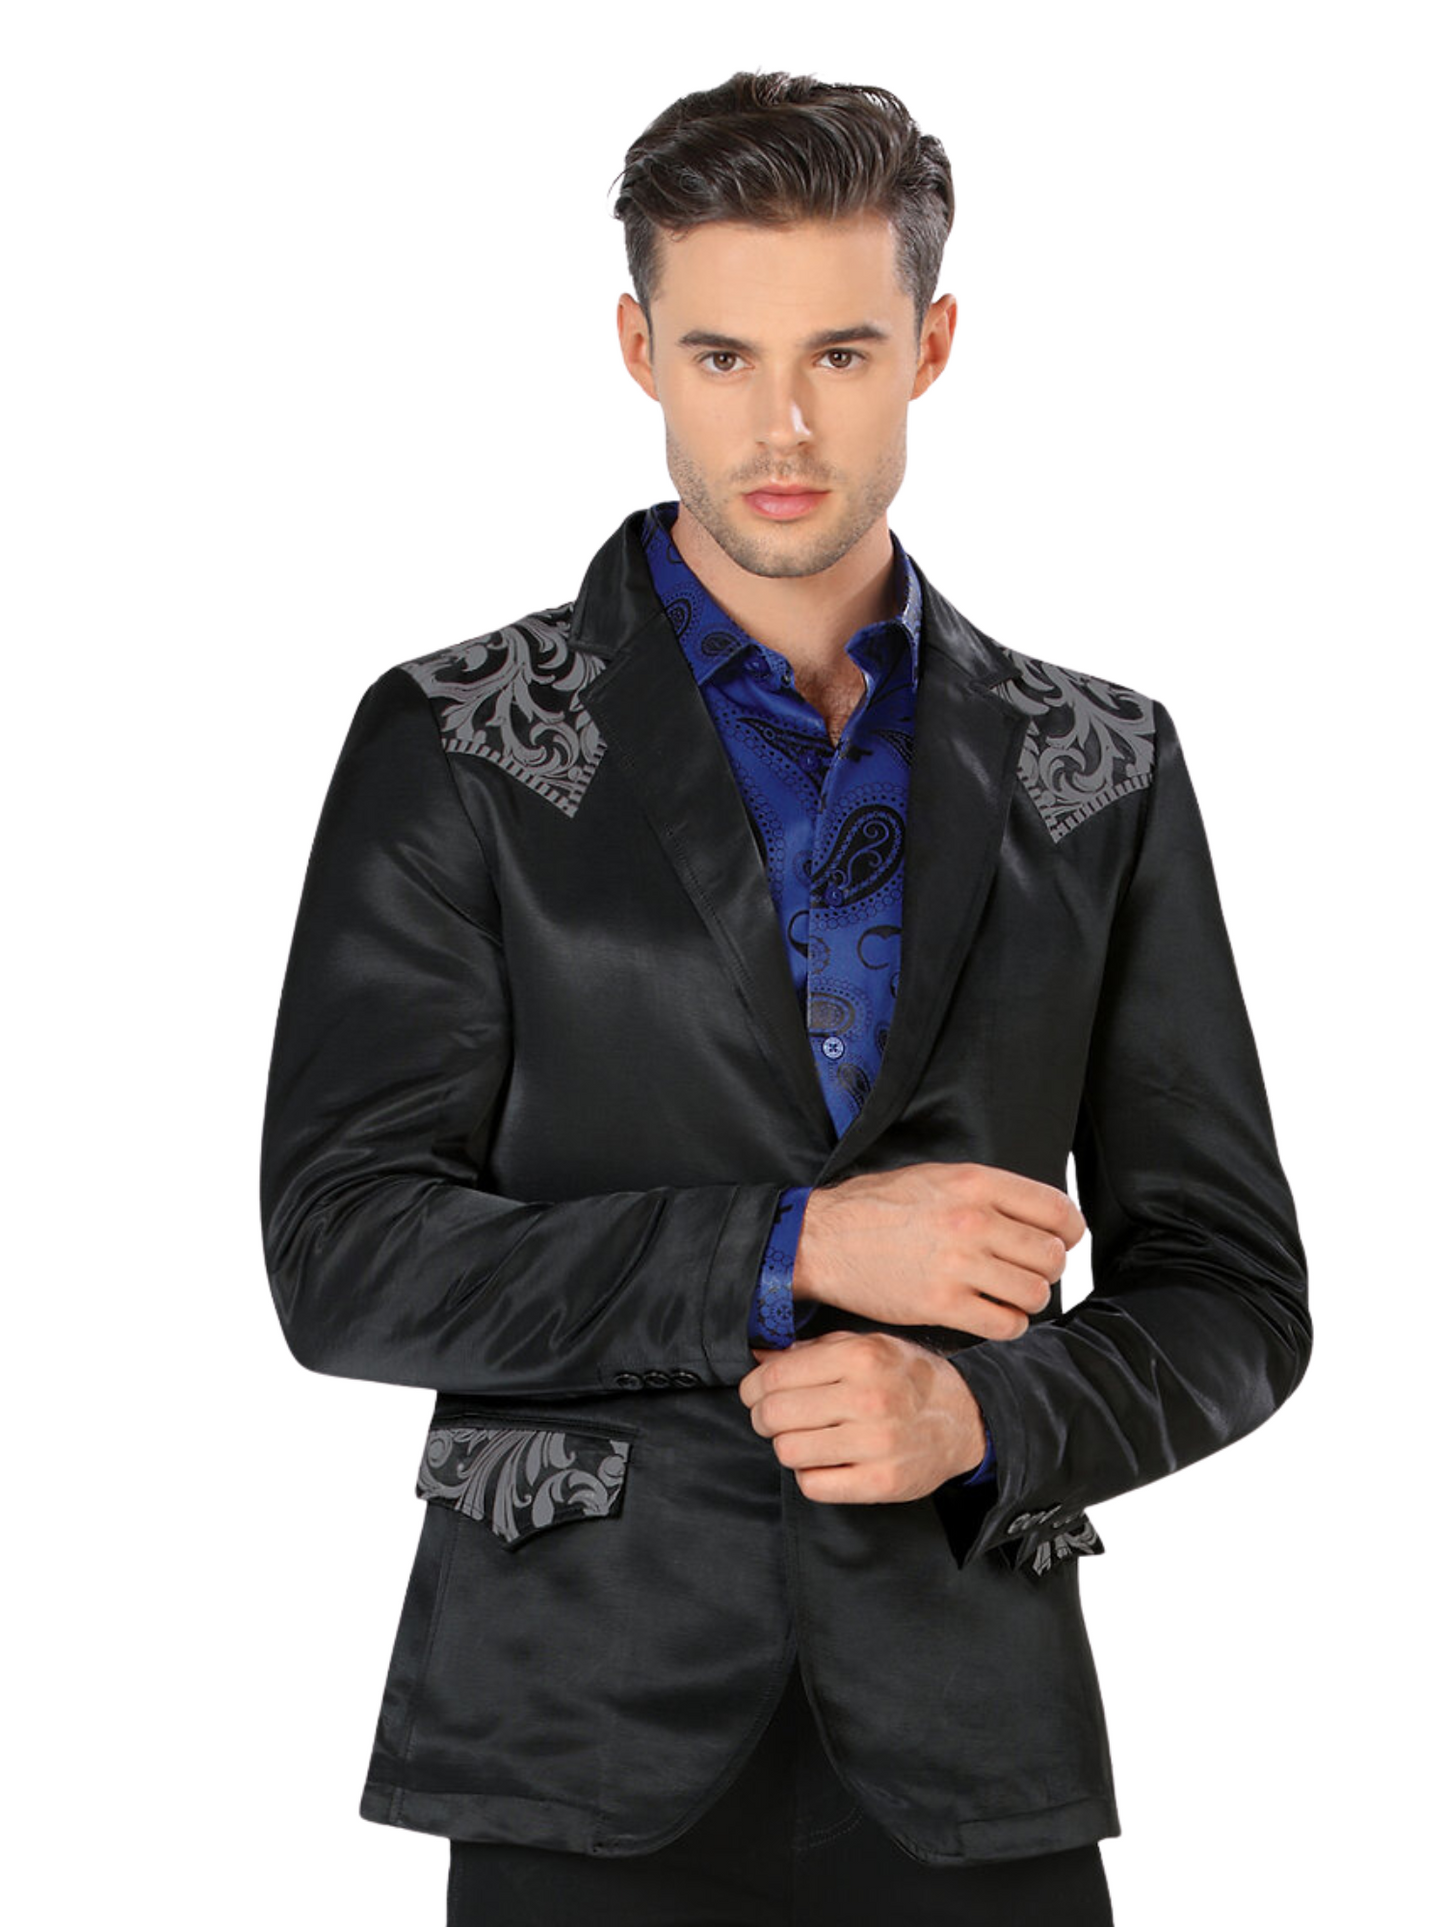 Embroidered Denim Jacket for Men 'Montero' - ID: 2178 Western Blazer Montero Black/Gray